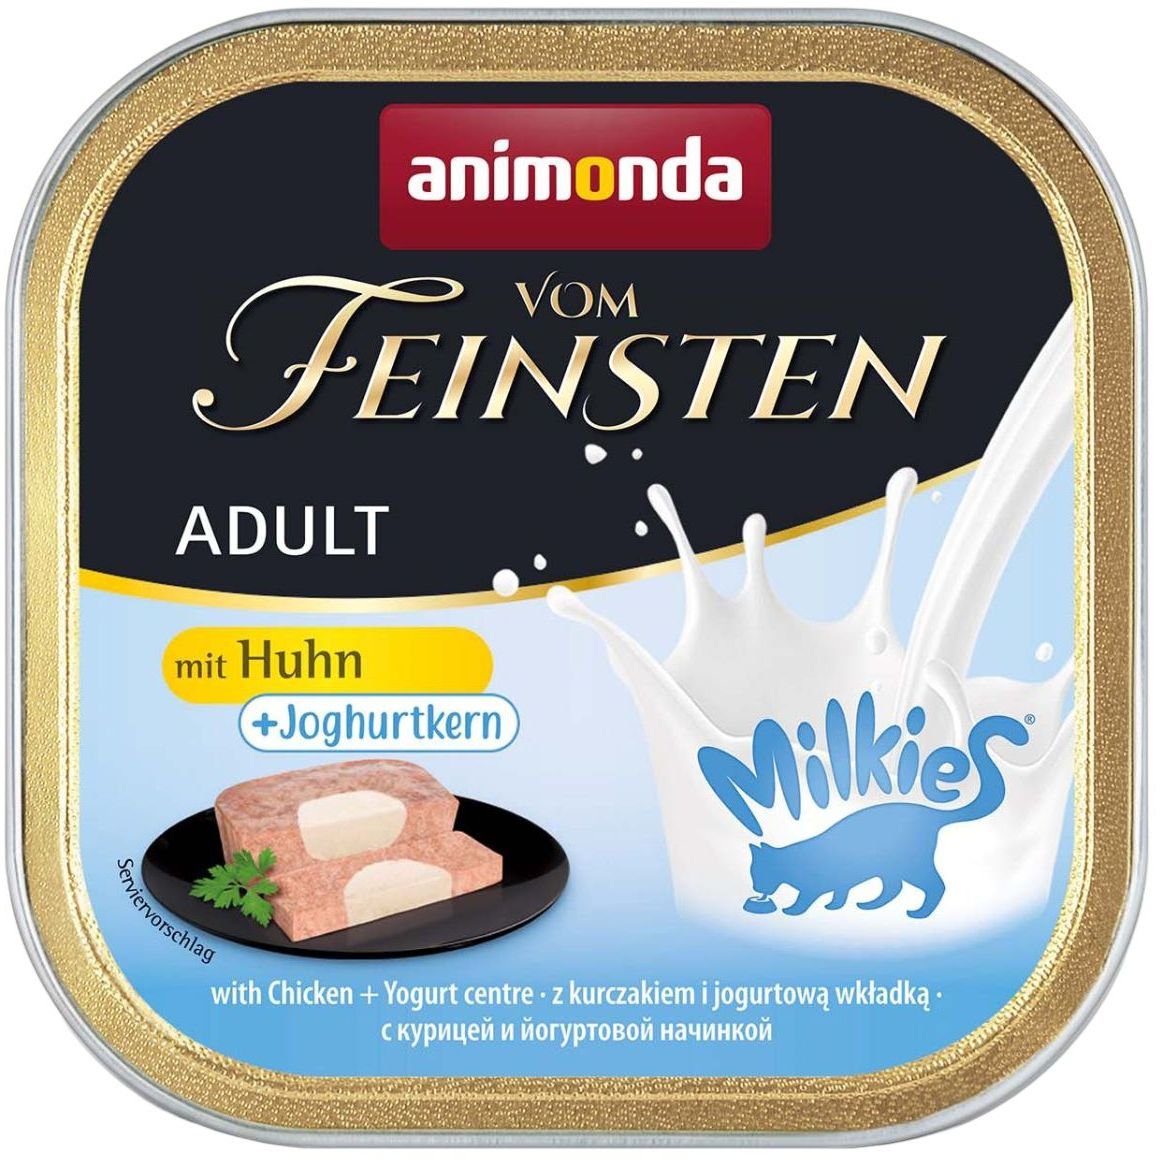 Влажный корм для кошек Animonda Vom Feinsten Adult with Chicken + Yoghurt centre, з курицей и йогуртовой начинкой, 100 г - фото 1